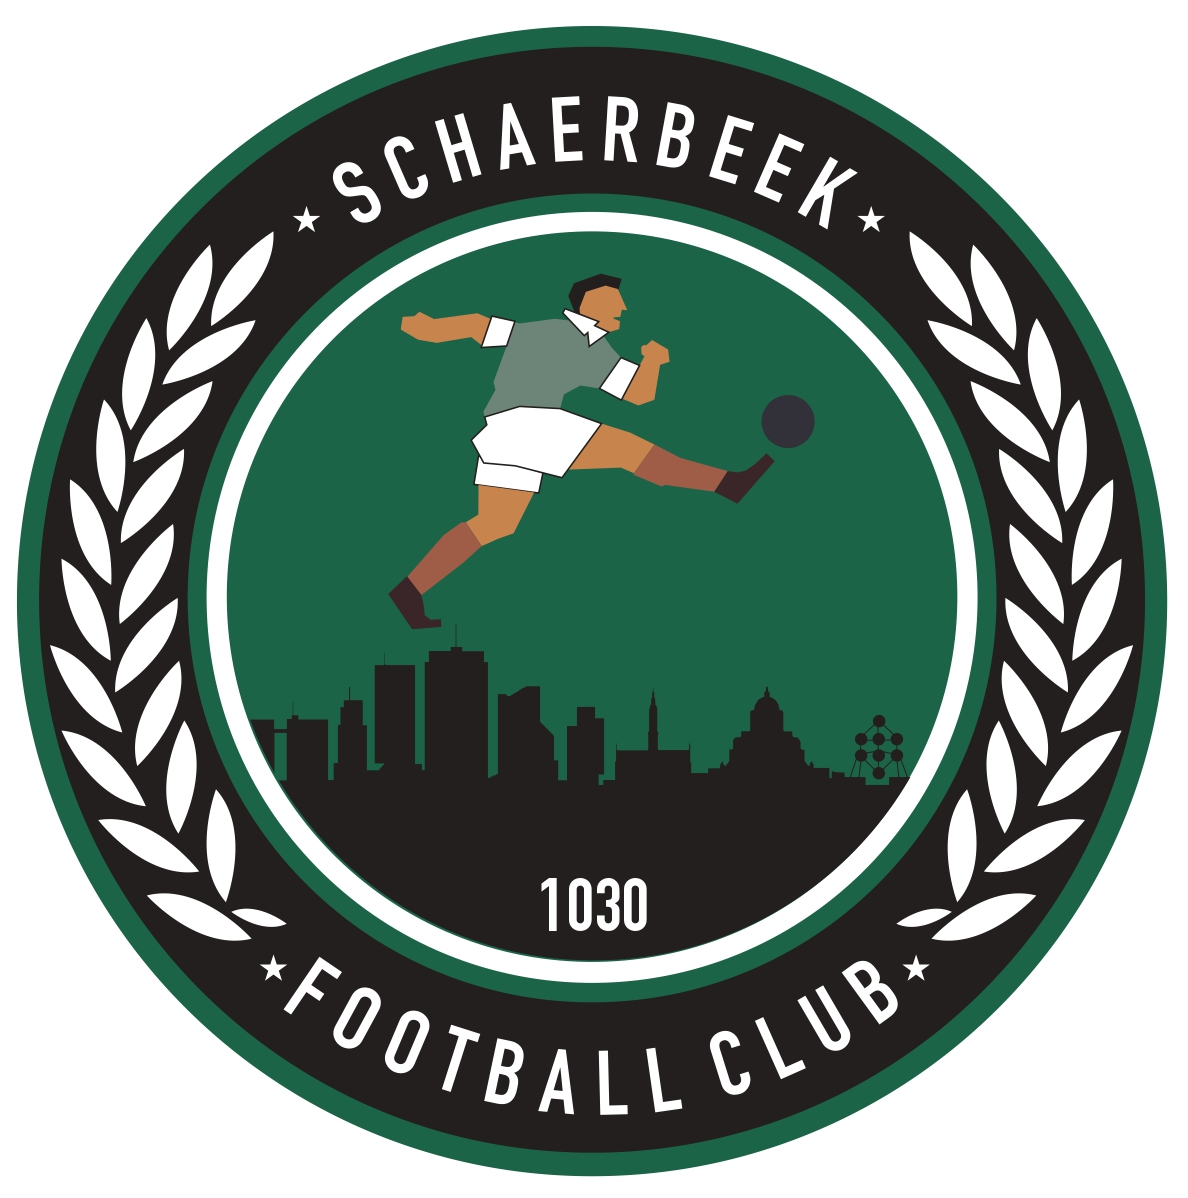 1 - Football Club Schaerbeek A